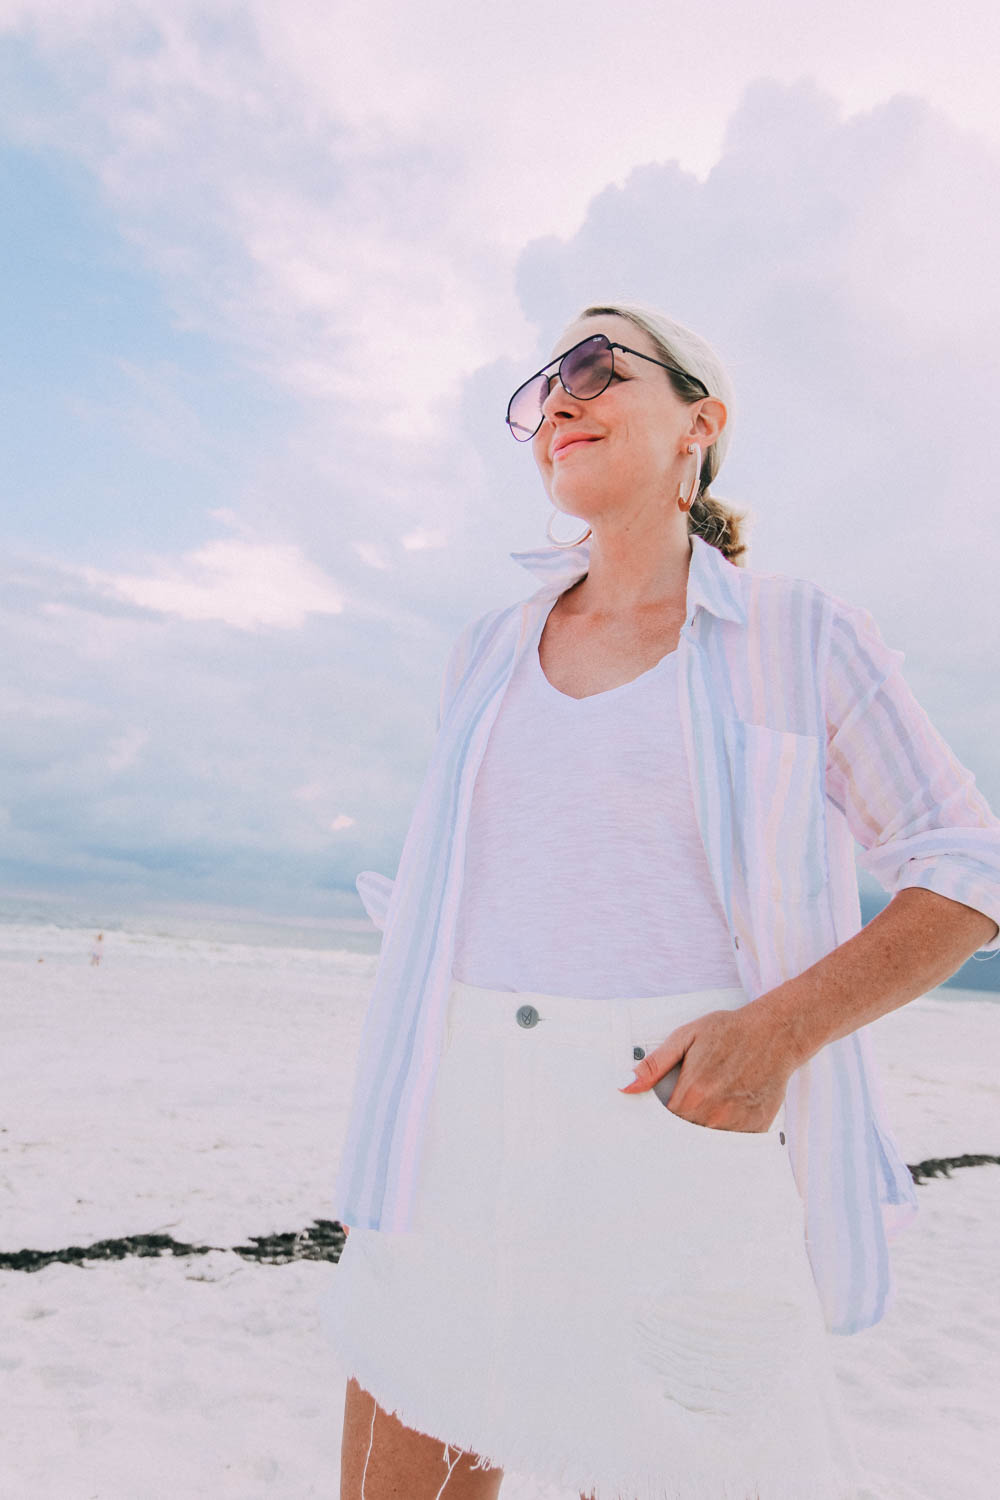 Skorts Fashion blogger busbee style wearing MinkPink white denim skirt on beach